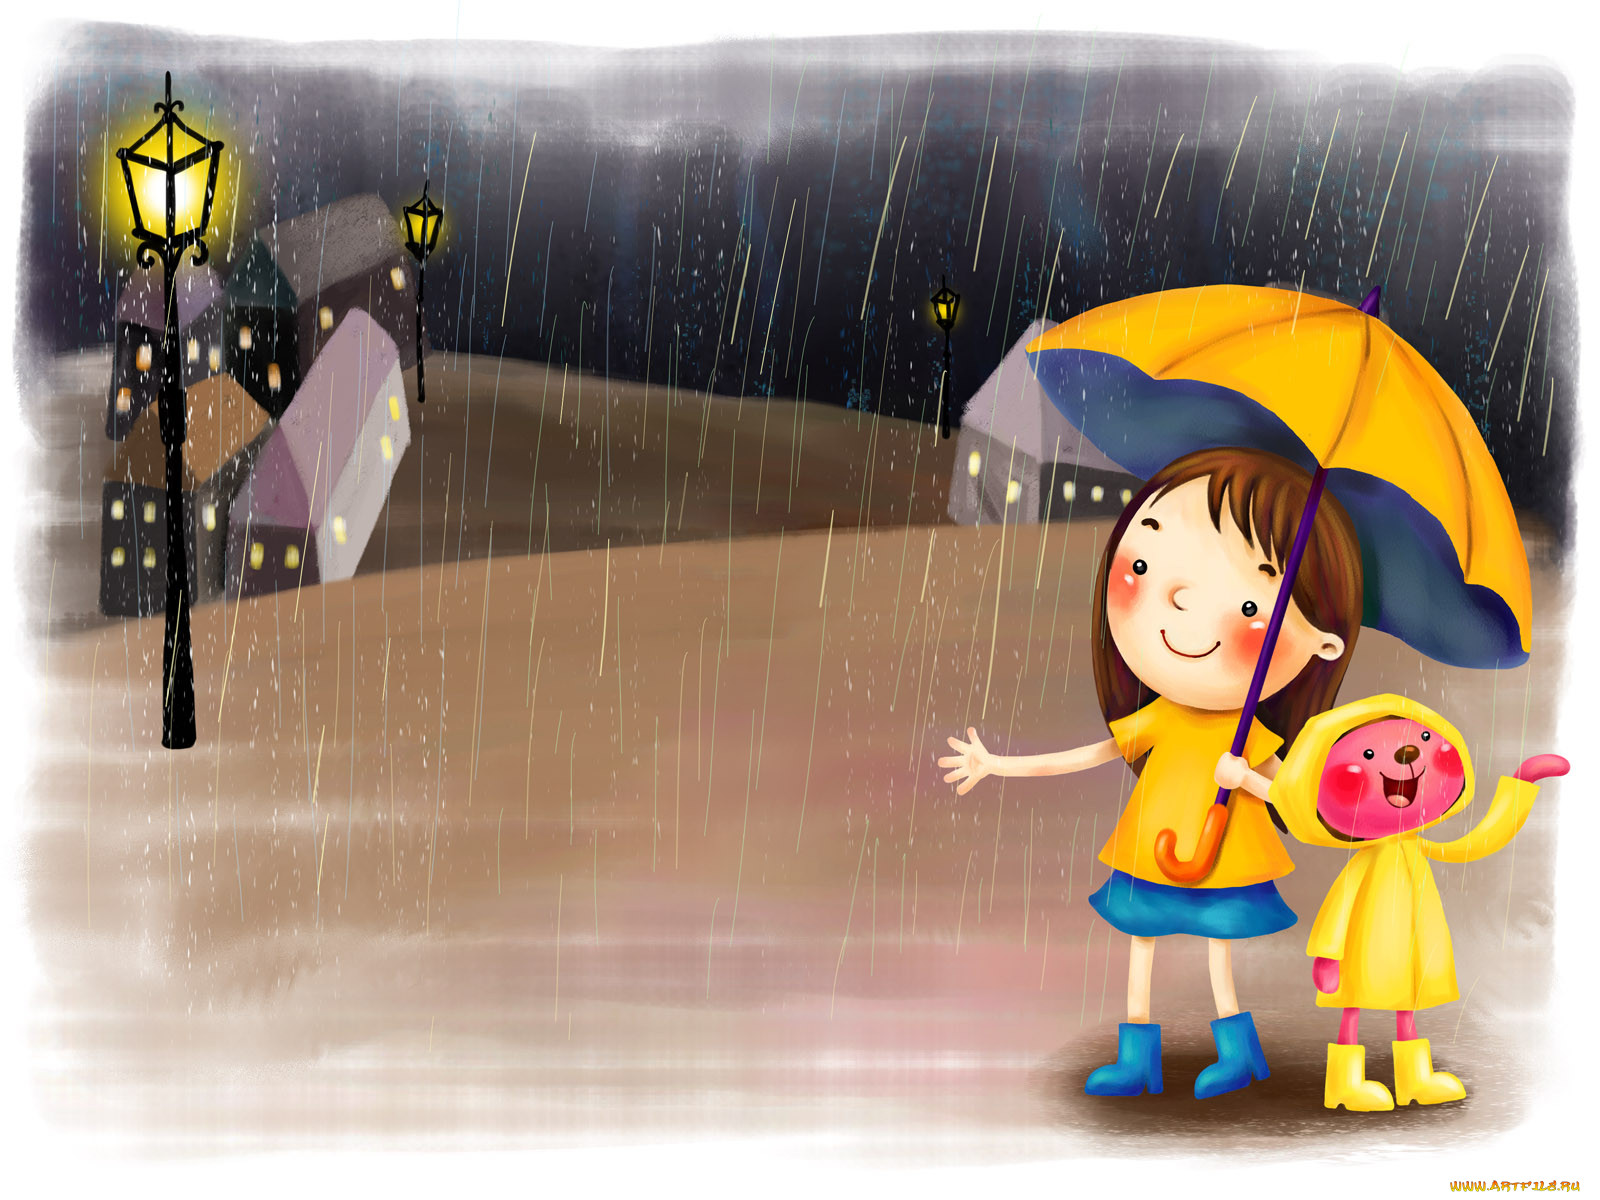 Вредный дождик. День прогвлов под Дождкм. Дети дождя. Дождливый день. Дождь рисунок.